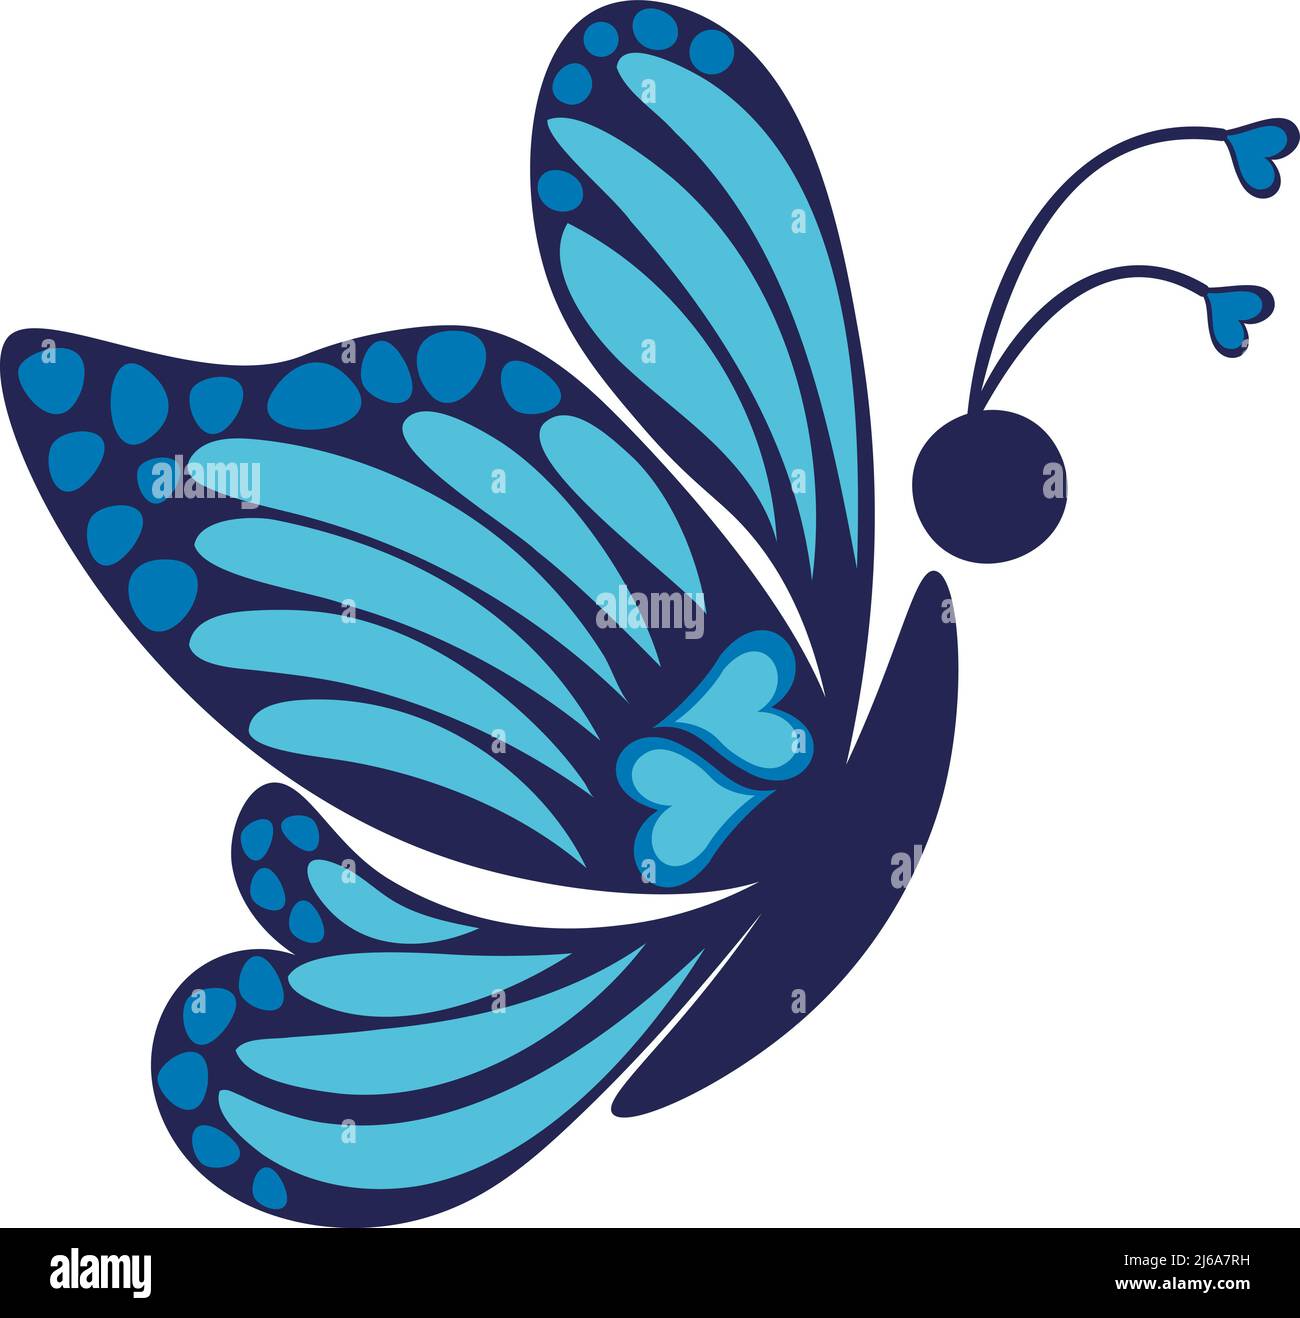 2D vue latérale d'un vecteur papillon de caricature isolé bleu foncé Illustration de Vecteur